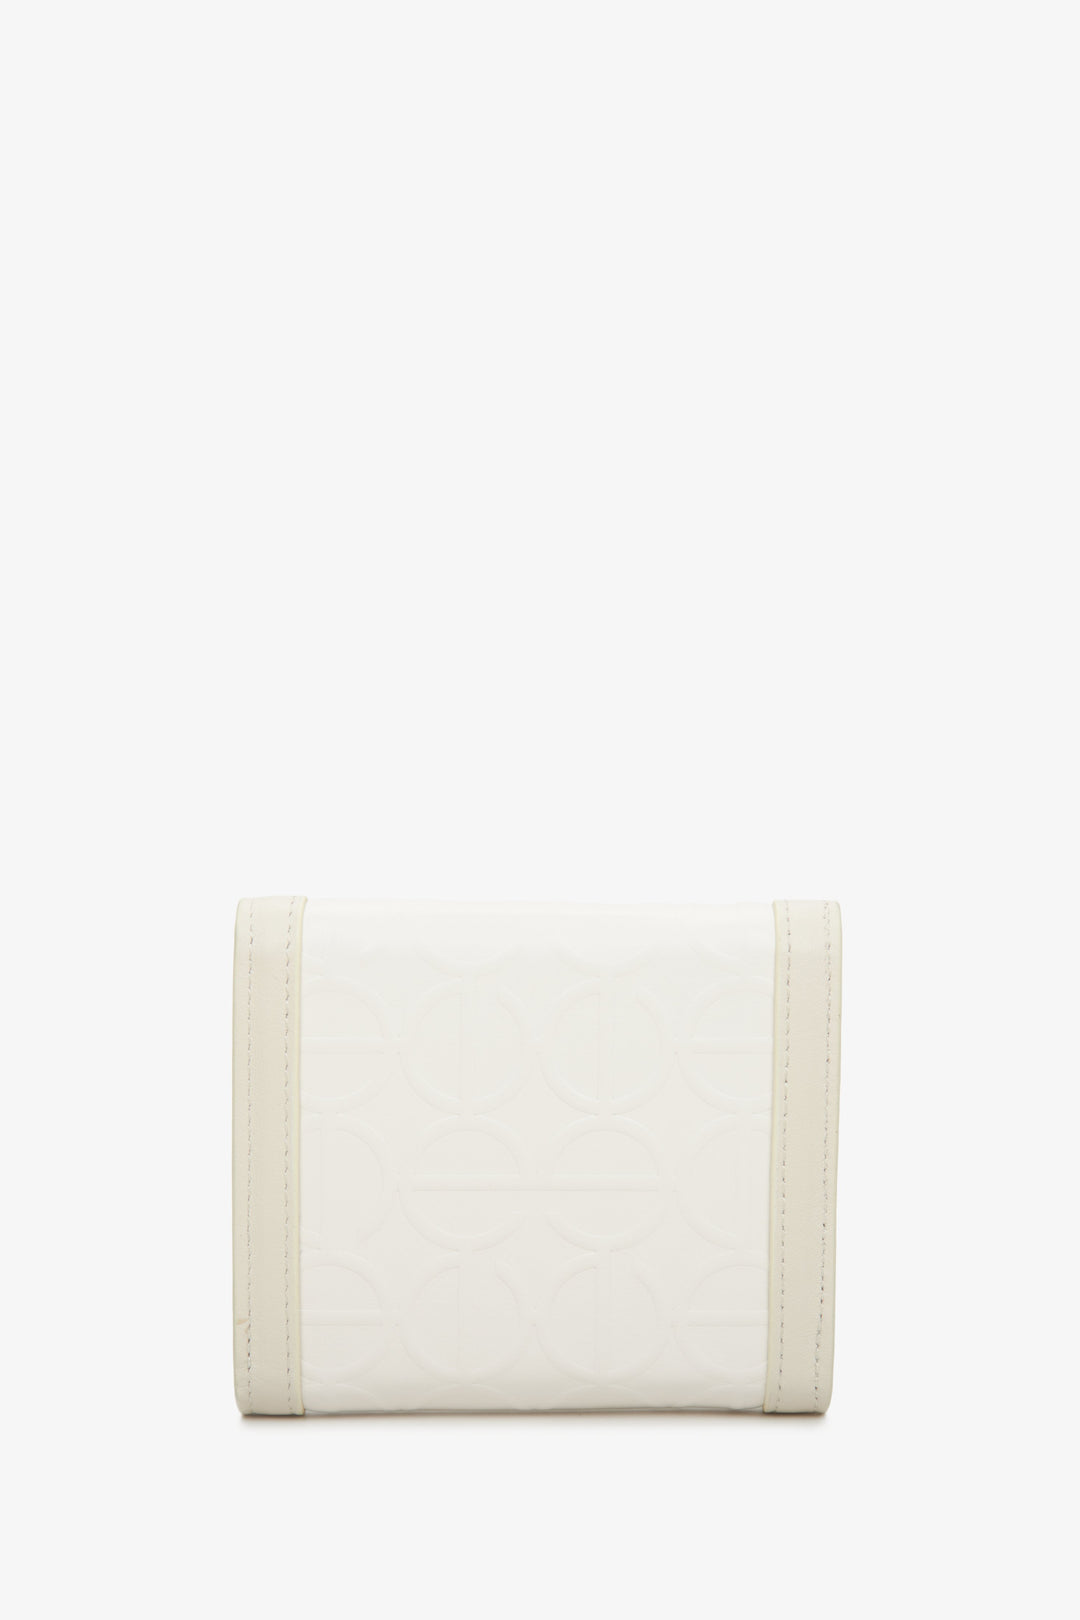 Handy beige Estro women's wallet - back side of the model.